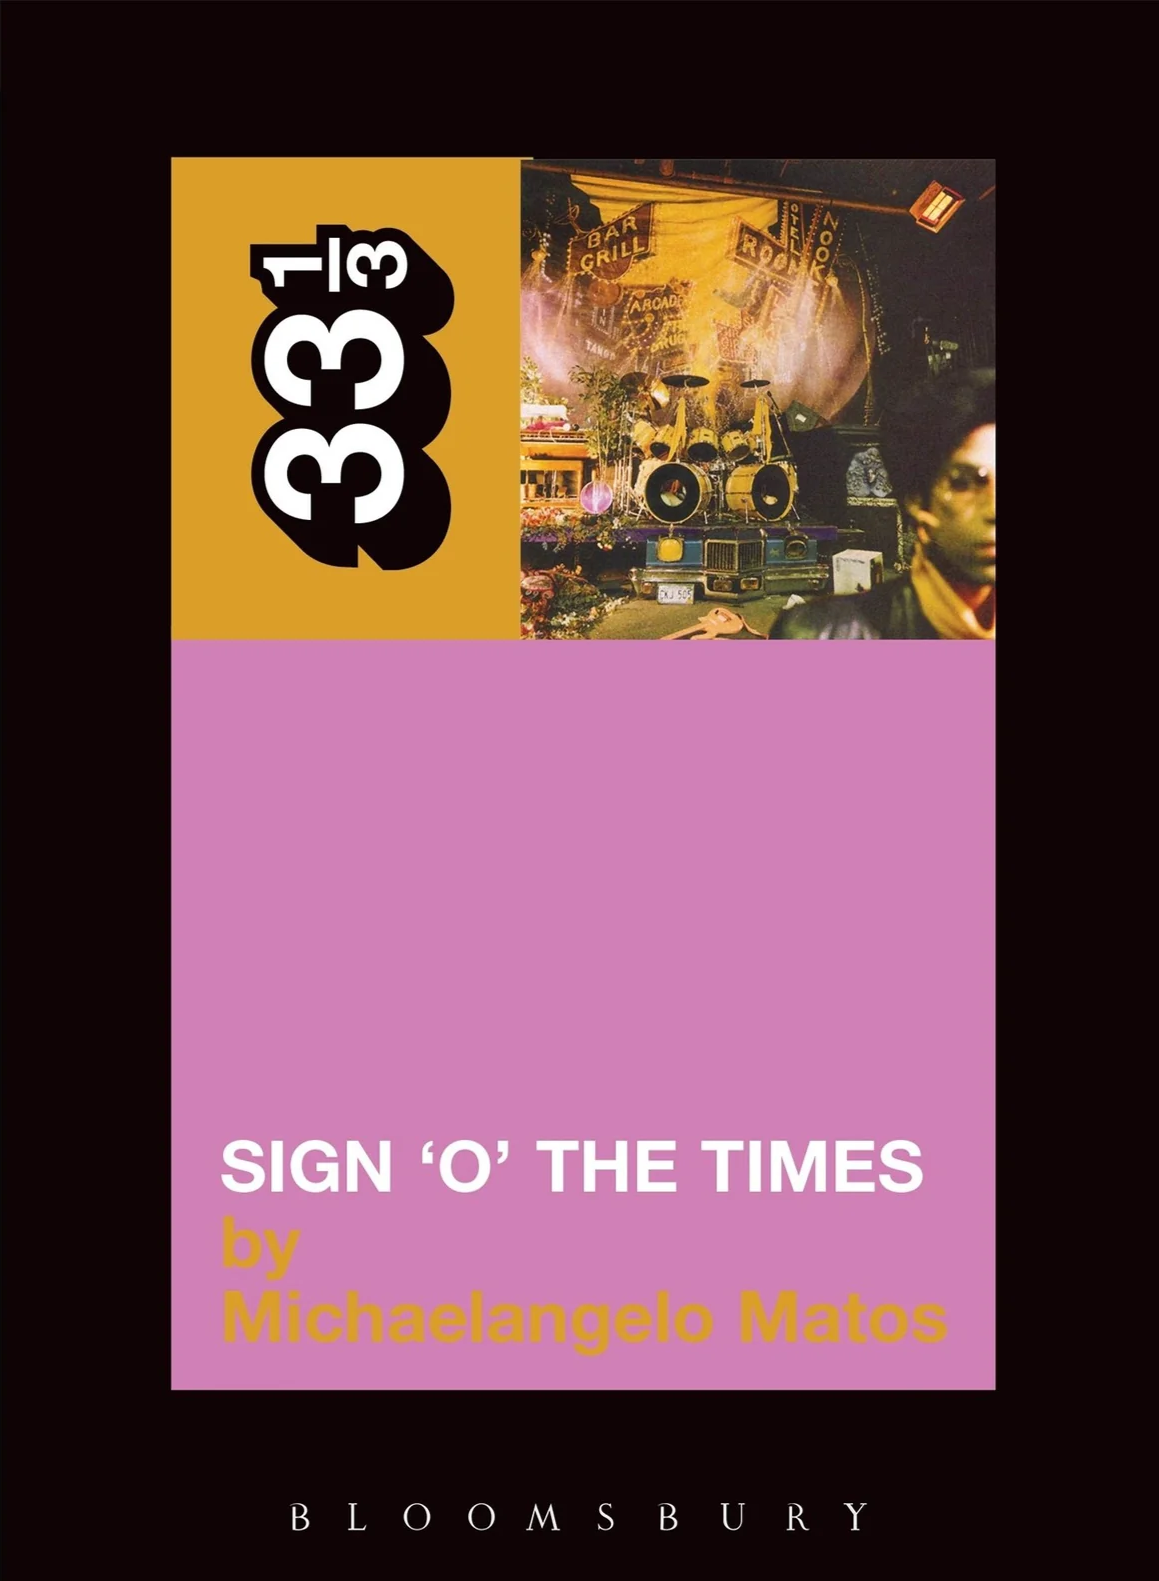 Prince's Sign 'o' the Times